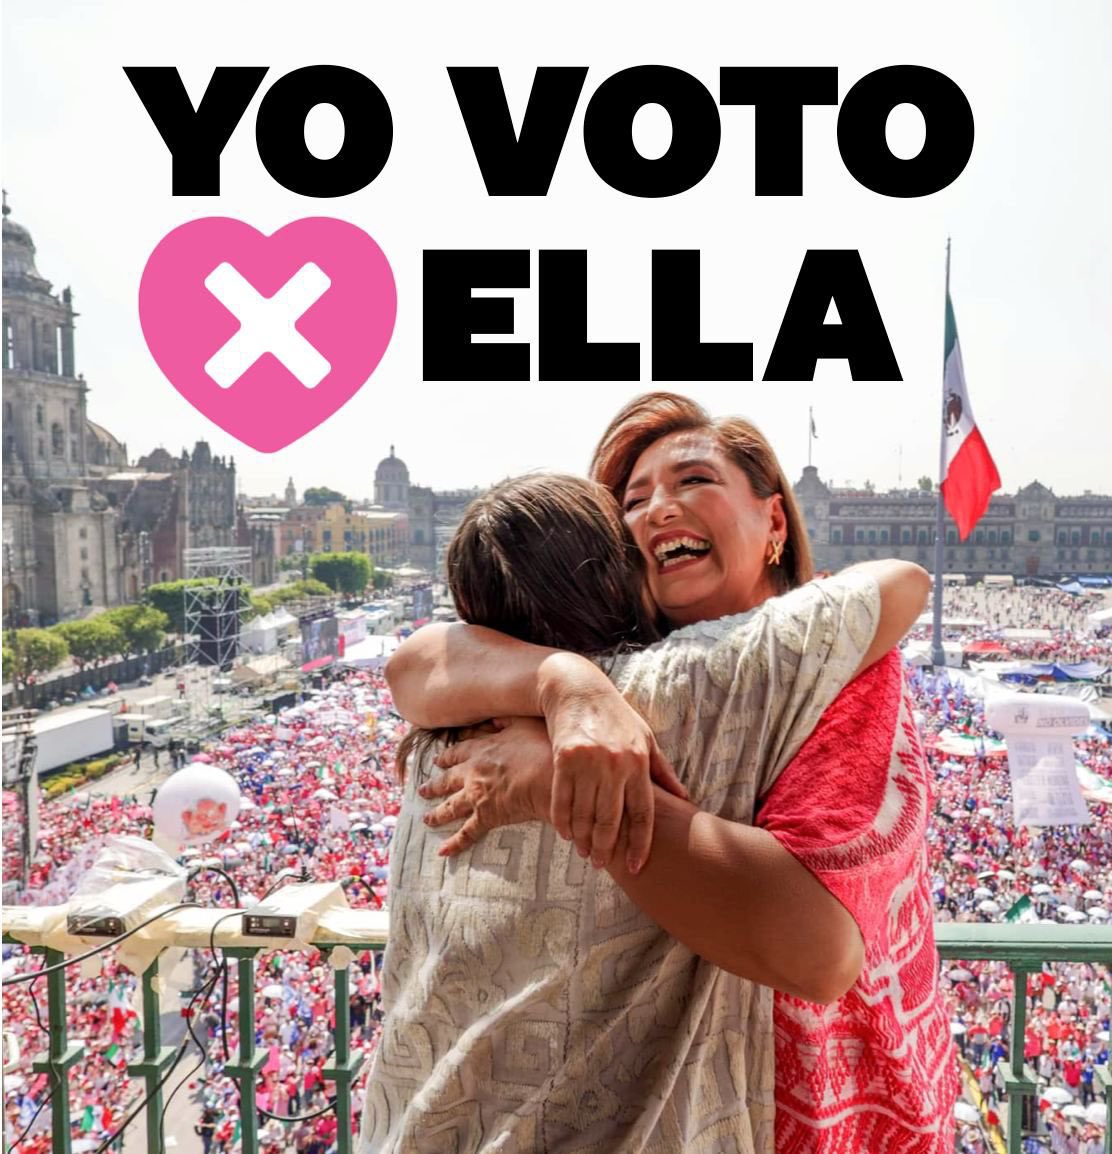 Este próximo #DosDeJunio

#YoVotoPorElla 🌺

#InundemosLasUrnas 

#MareaRosa 💖